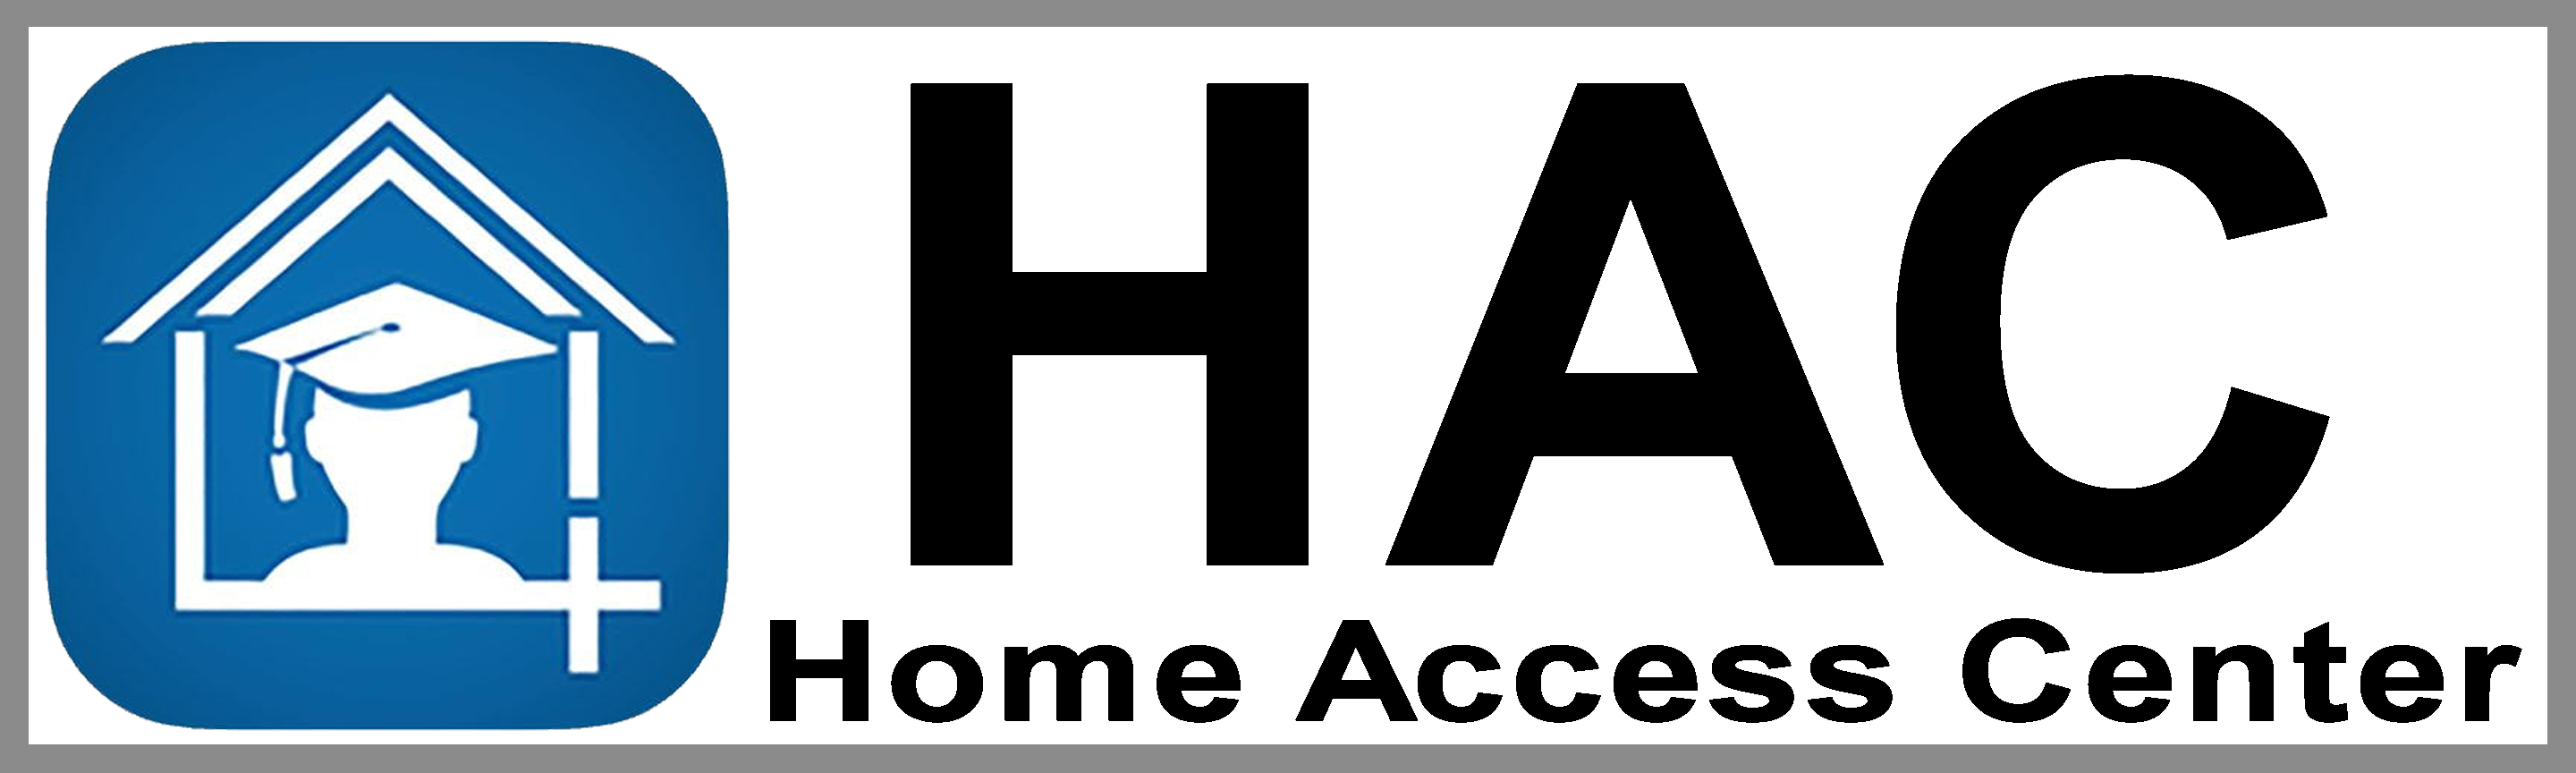 eSchool HAC logo